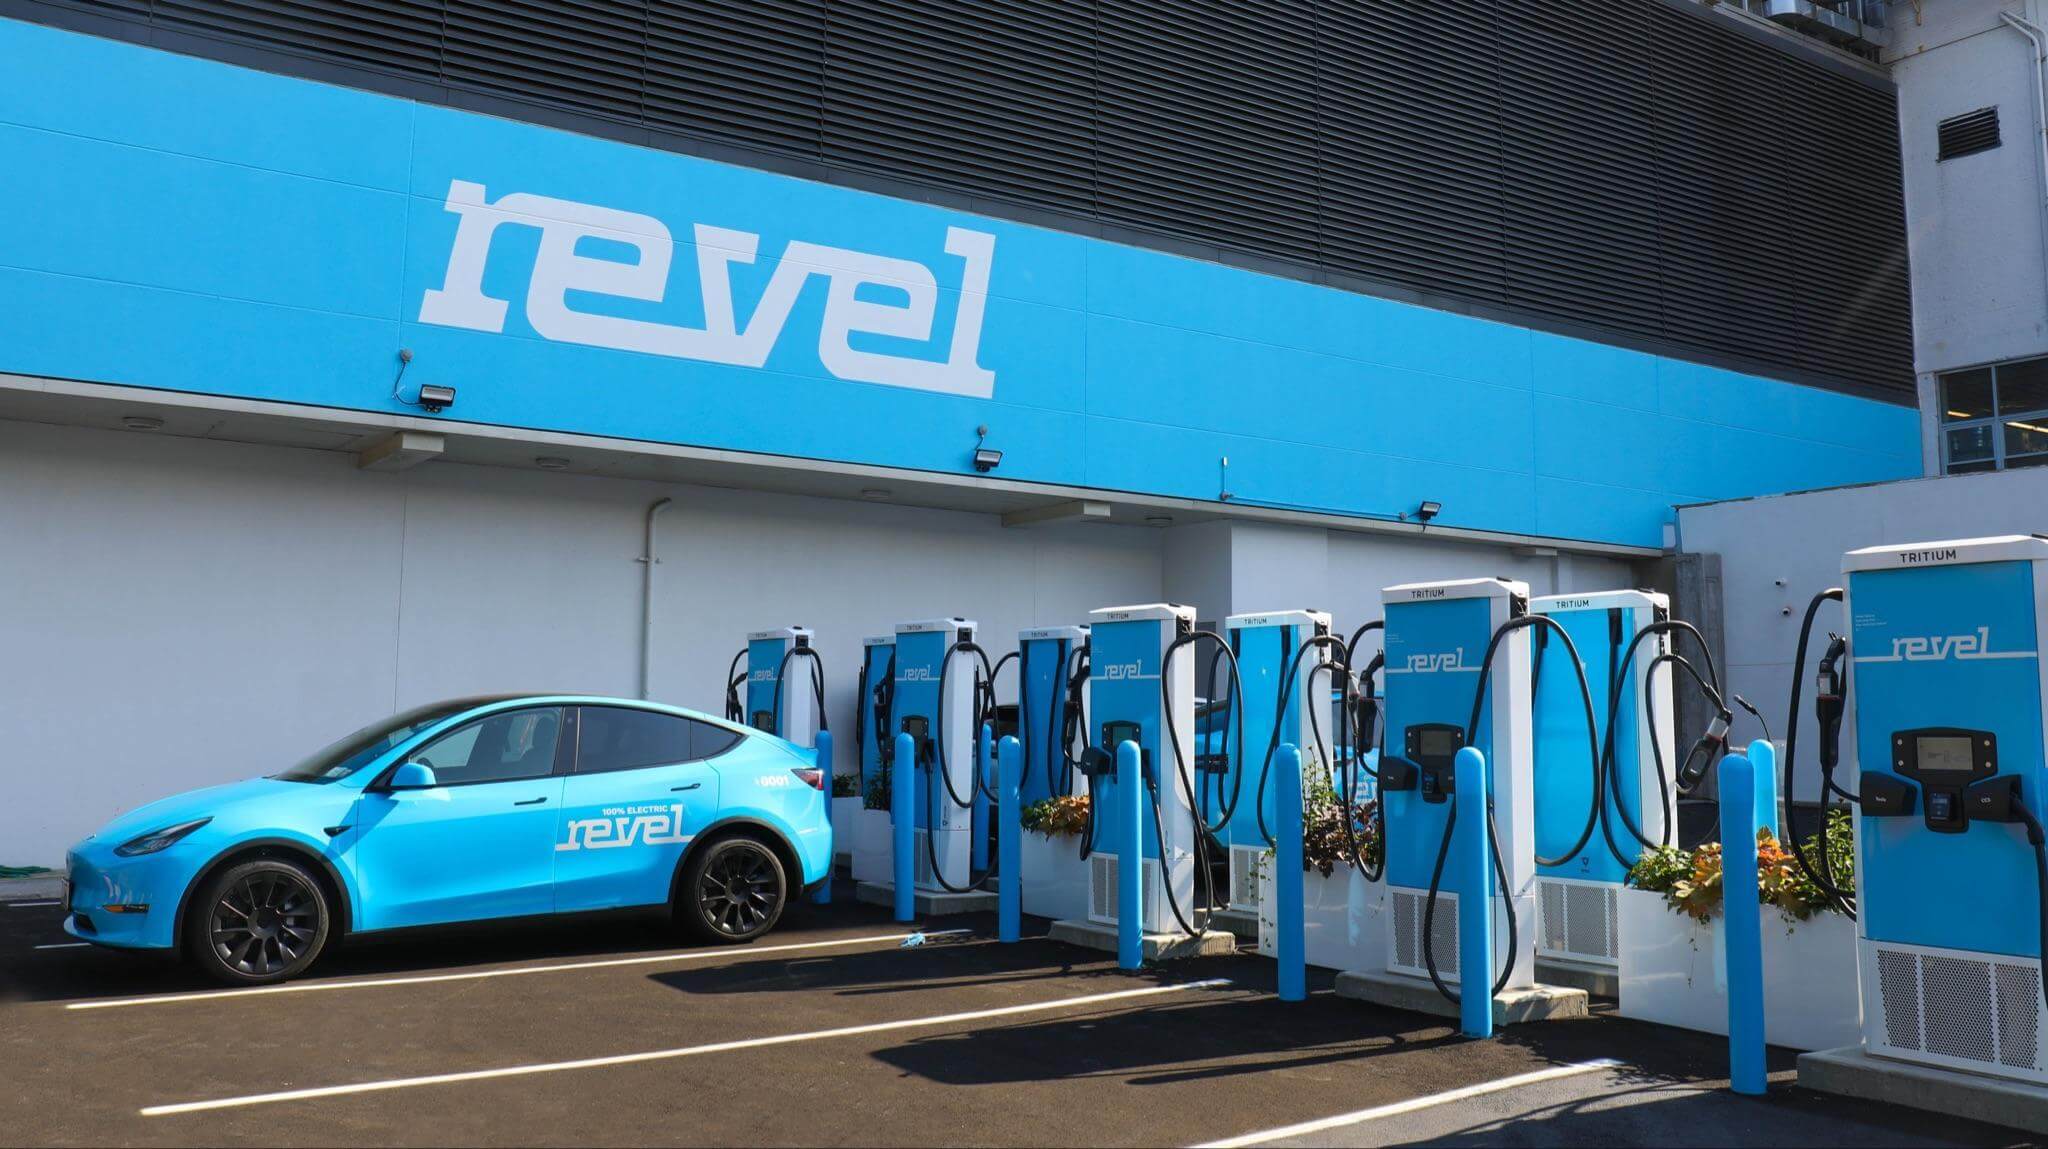 Revel annonce un financement par emprunt de 50 millions de dollars pour son expansion aux États-Unis